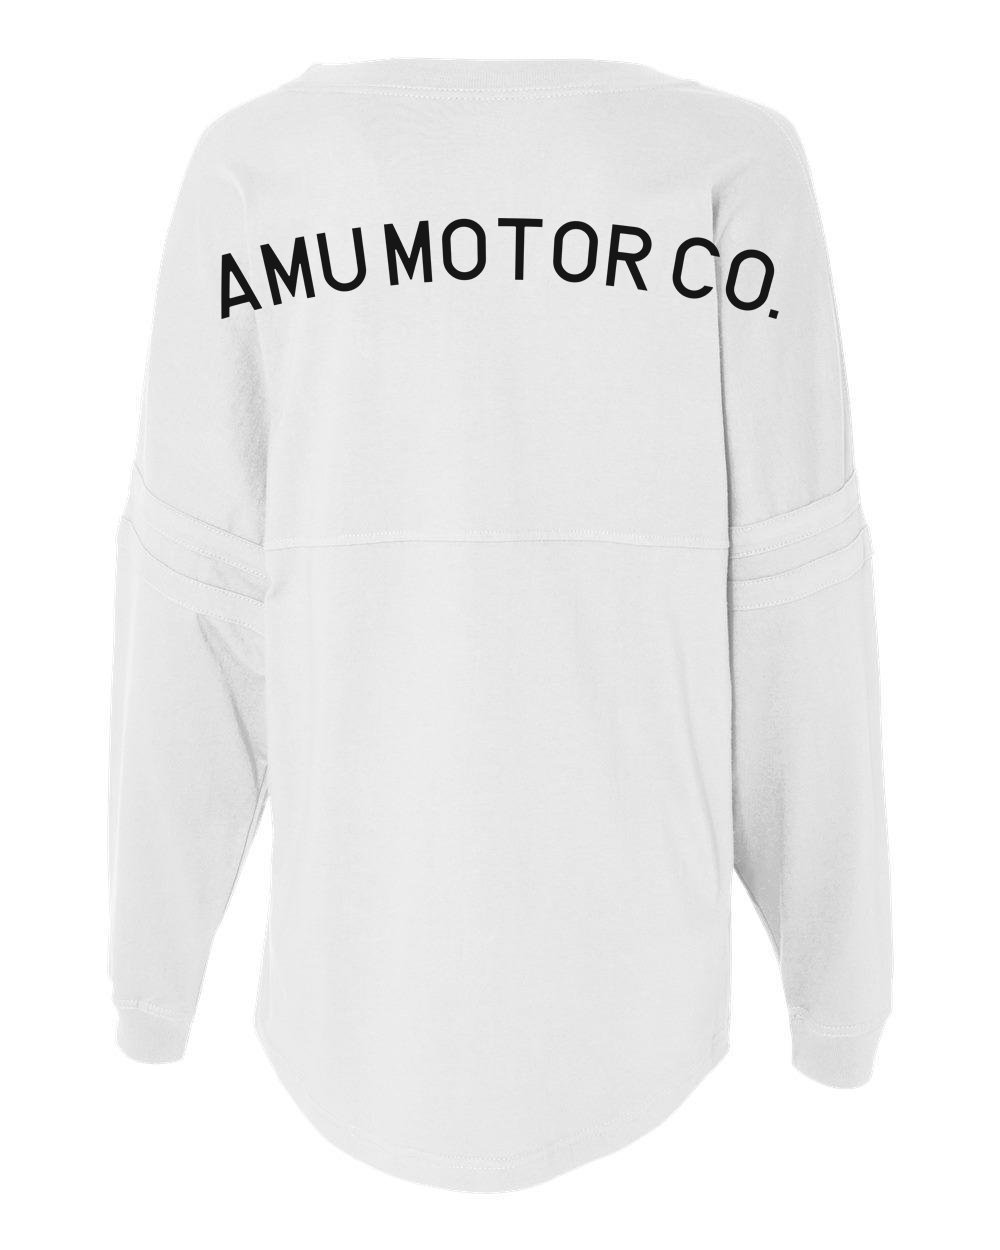 Image of AMU Motor Co. Spirit Jersey